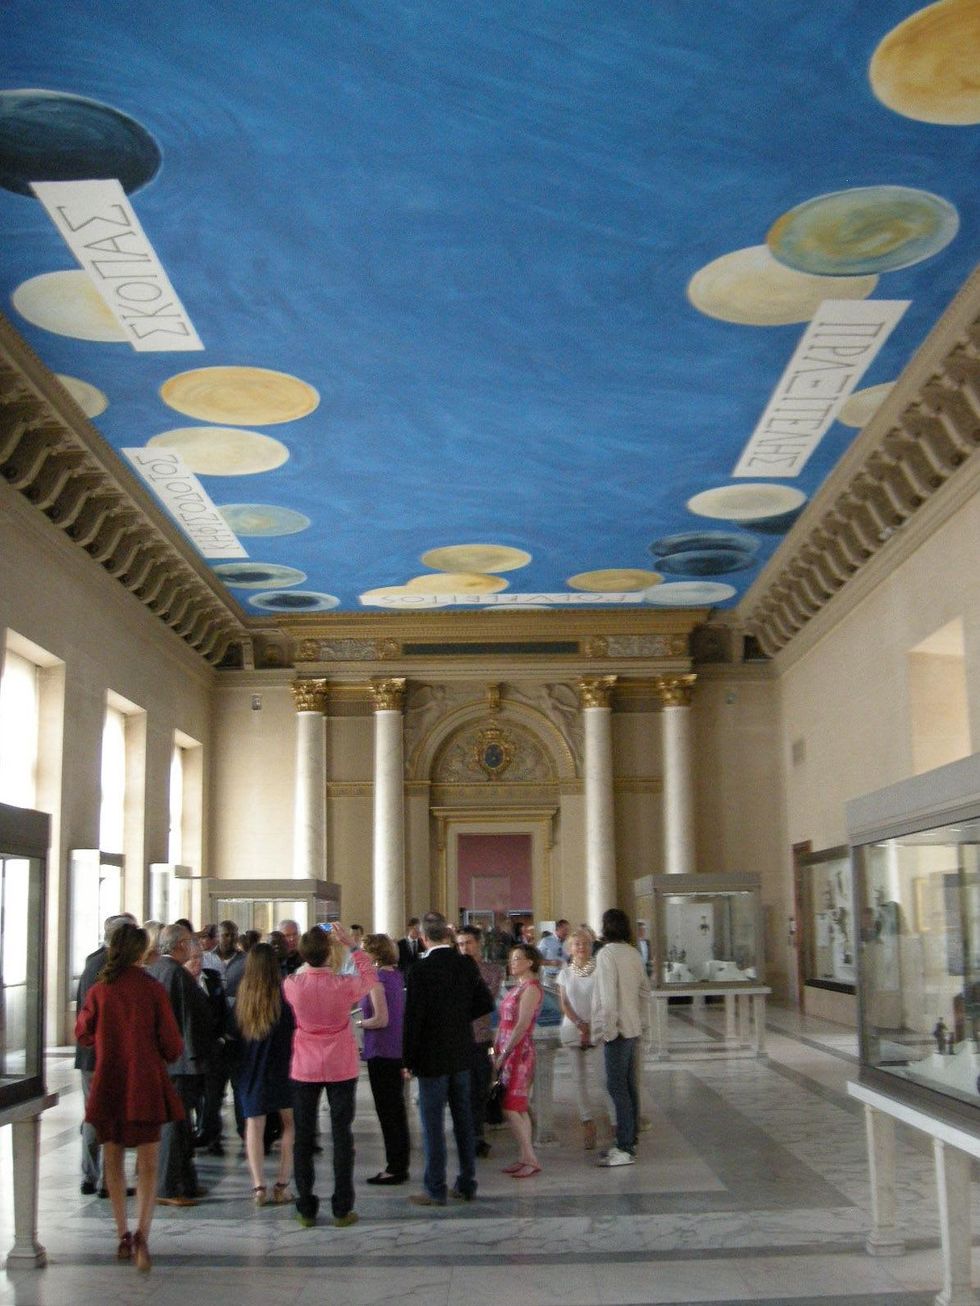 Louvre Paris tour July 2013 Twombly ceiling